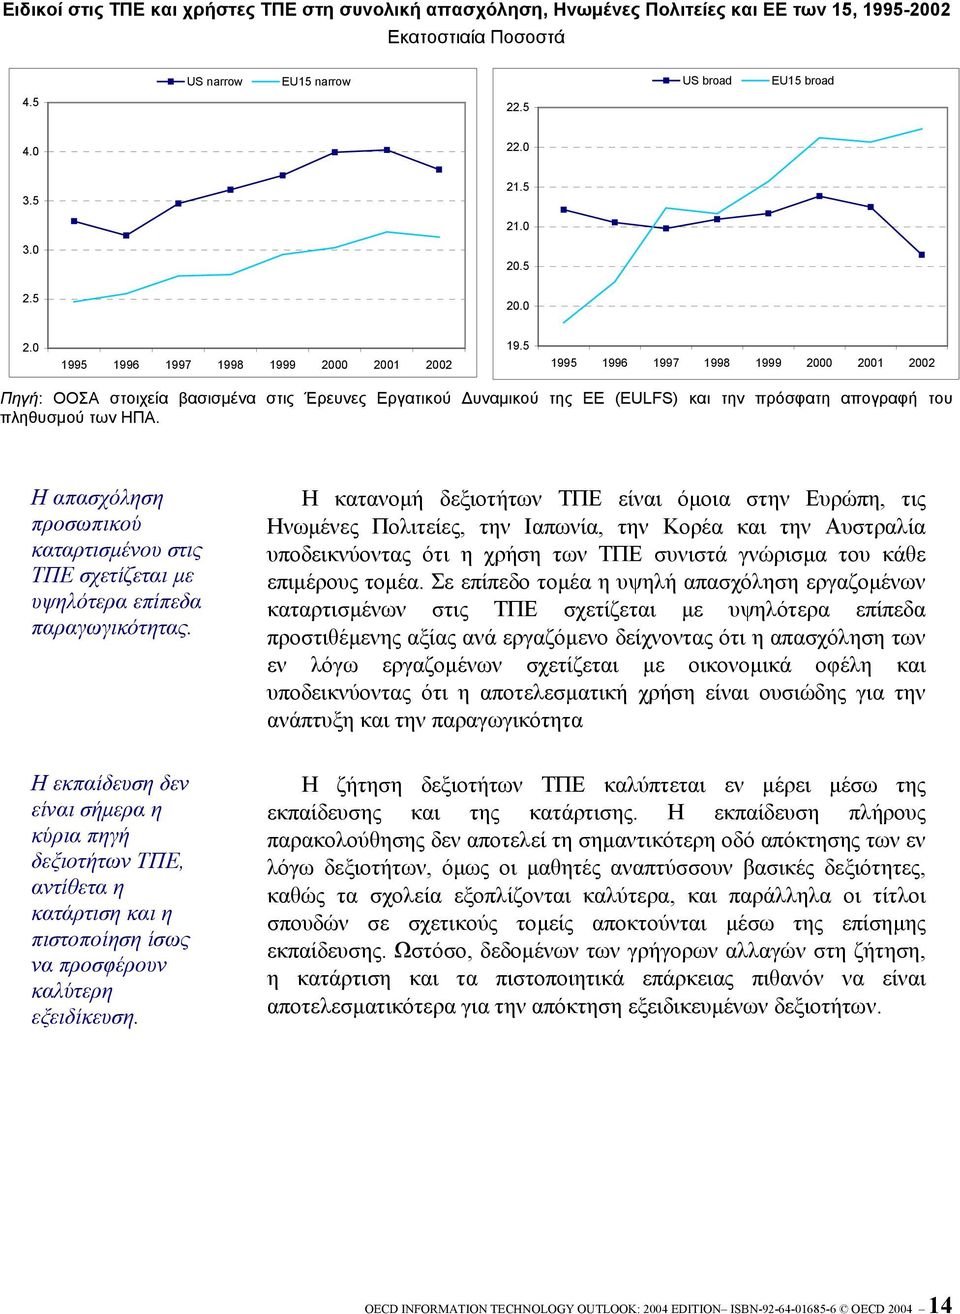 5 1995 1996 1997 1998 1999 2000 2001 2002 Πηγή: ΟΟΣΑ στοιχεία βασισµένα στις Έρευνες Εργατικού υναµικού της ΕΕ (EULFS) και την πρόσφατη απογραφή του πληθυσµού των ΗΠΑ.